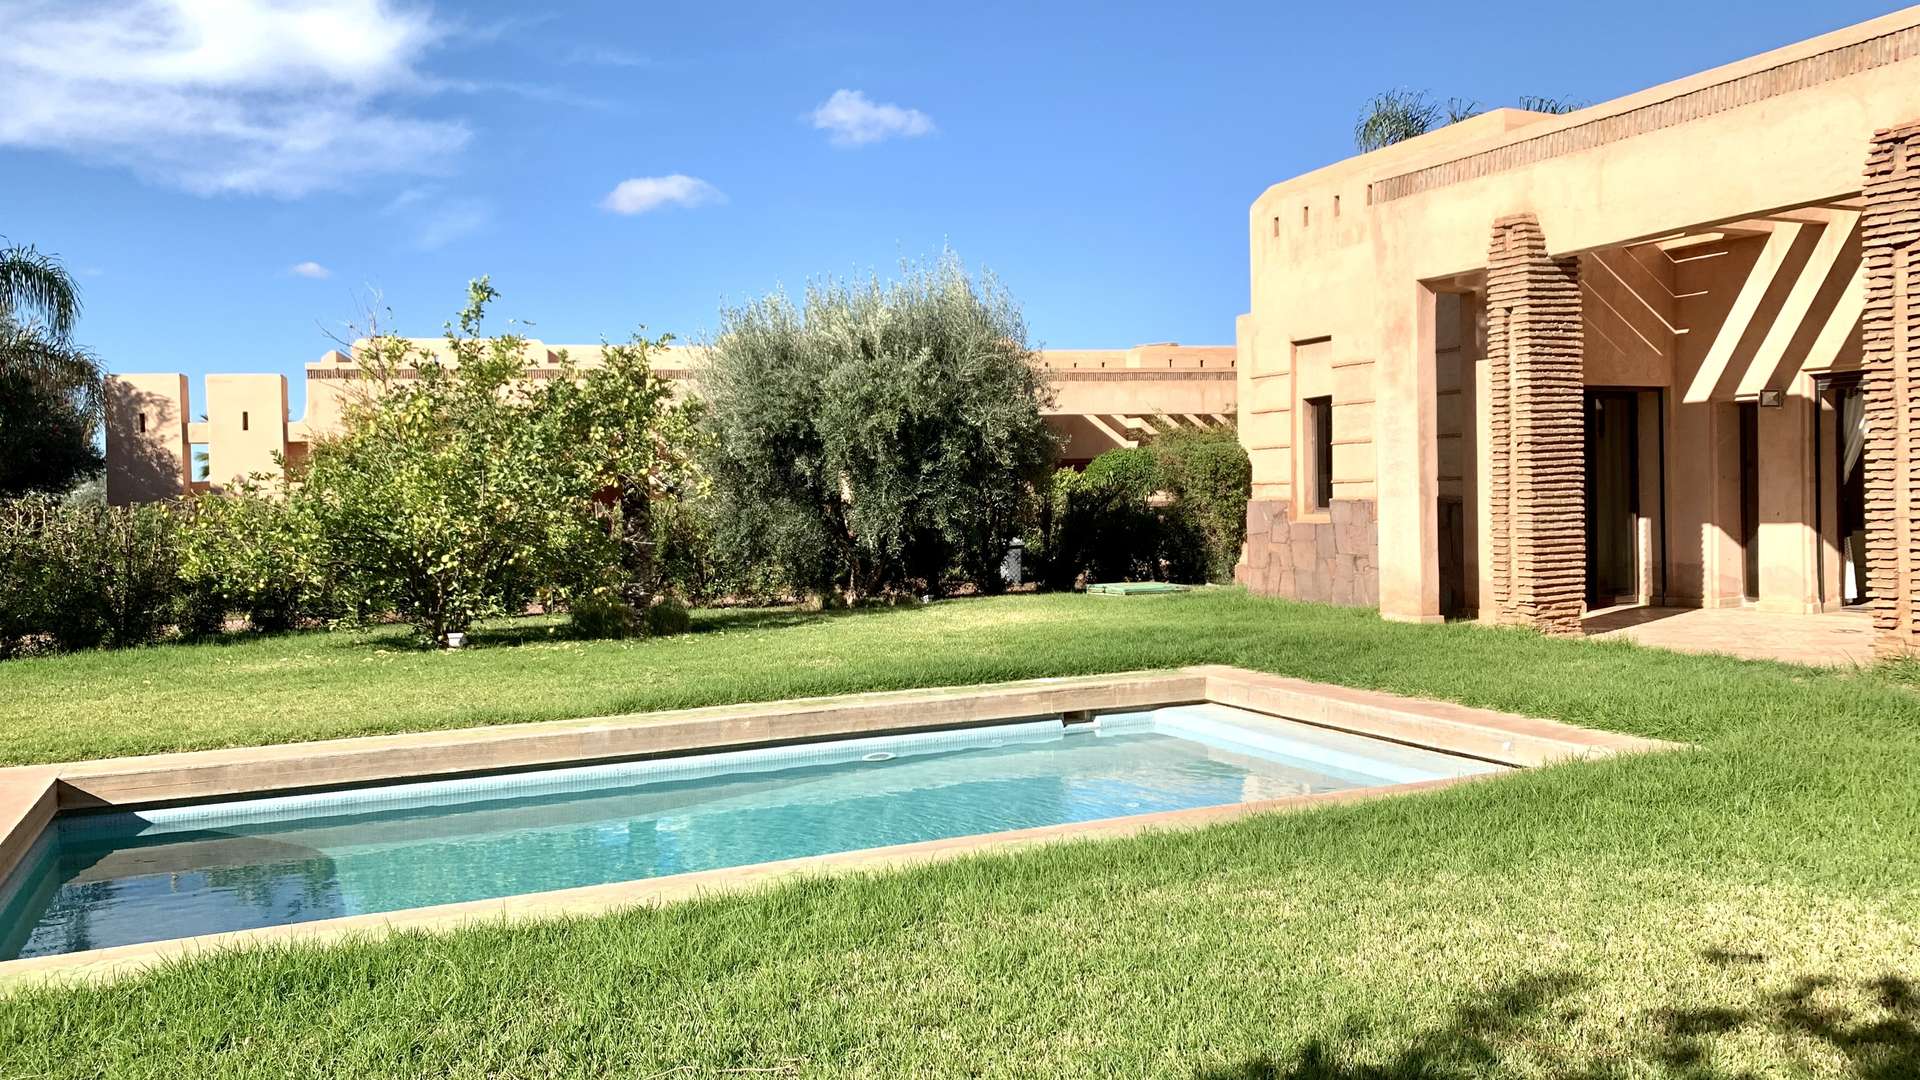 Vente,Villa,Villa 3ch MEUBLÉE avec piscine dans un complexe résidentiel  15 min. du centre de Marrakech,Marrakech,Route de Fès